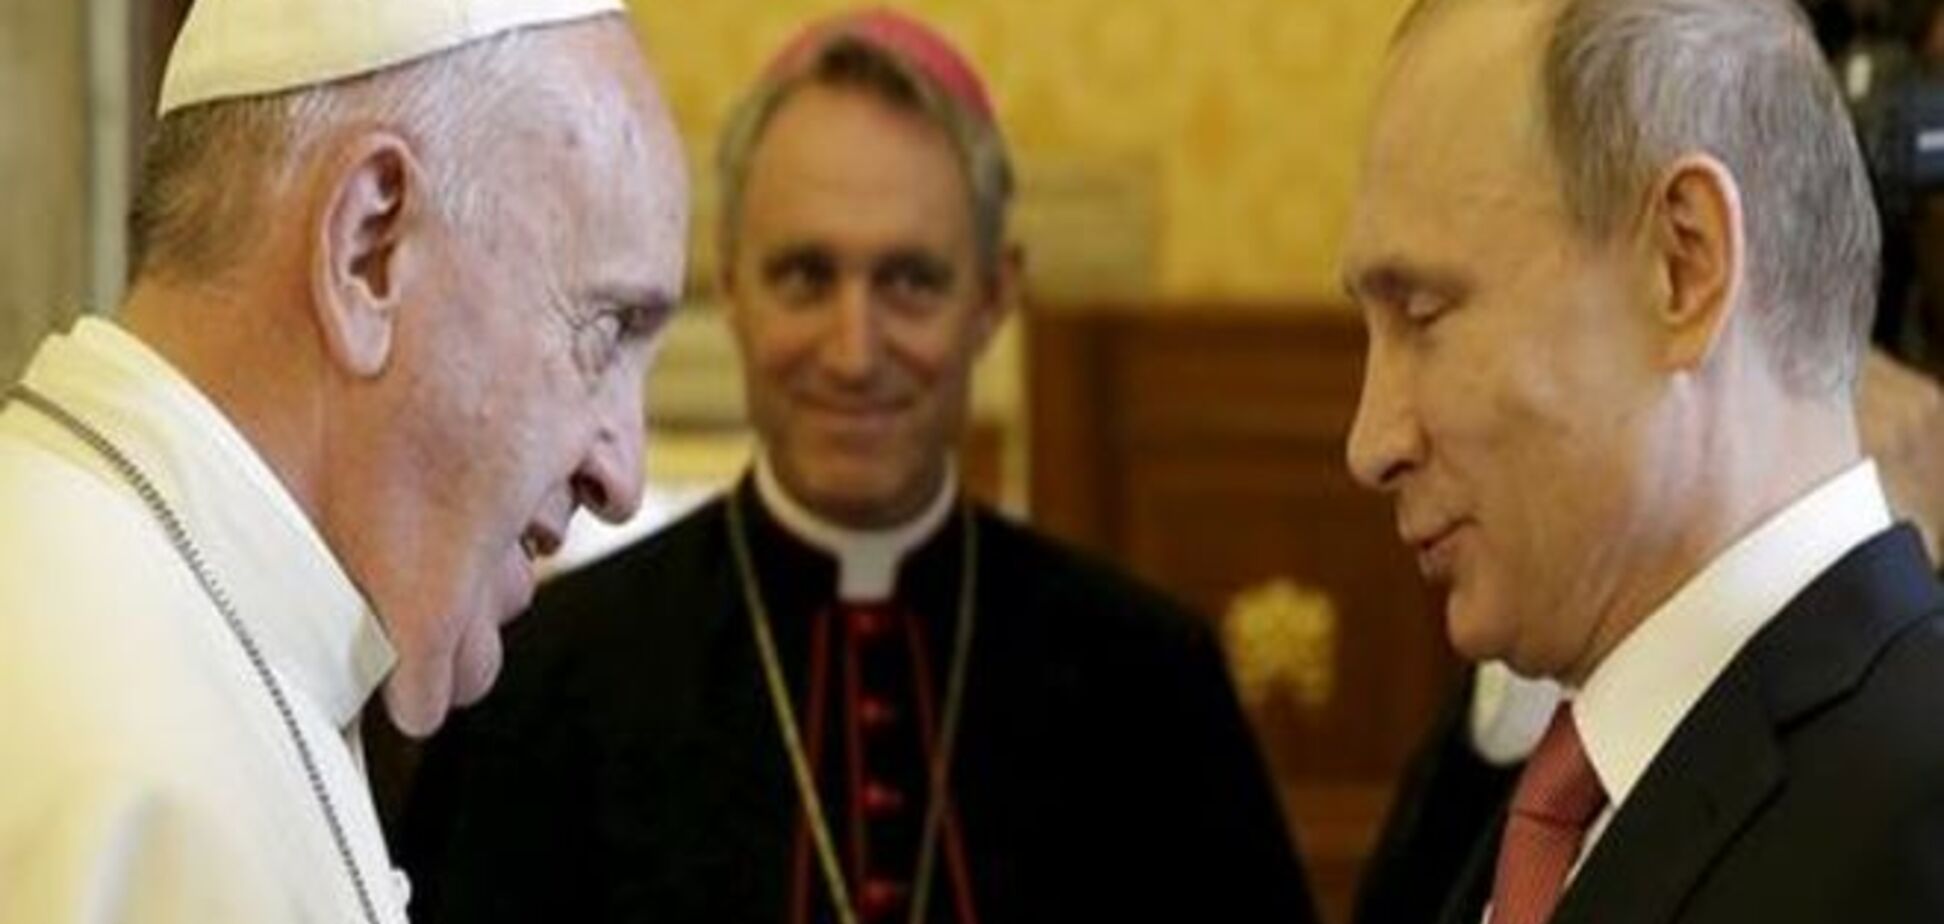 Комментарий: Союз Кремля и Ватикана?